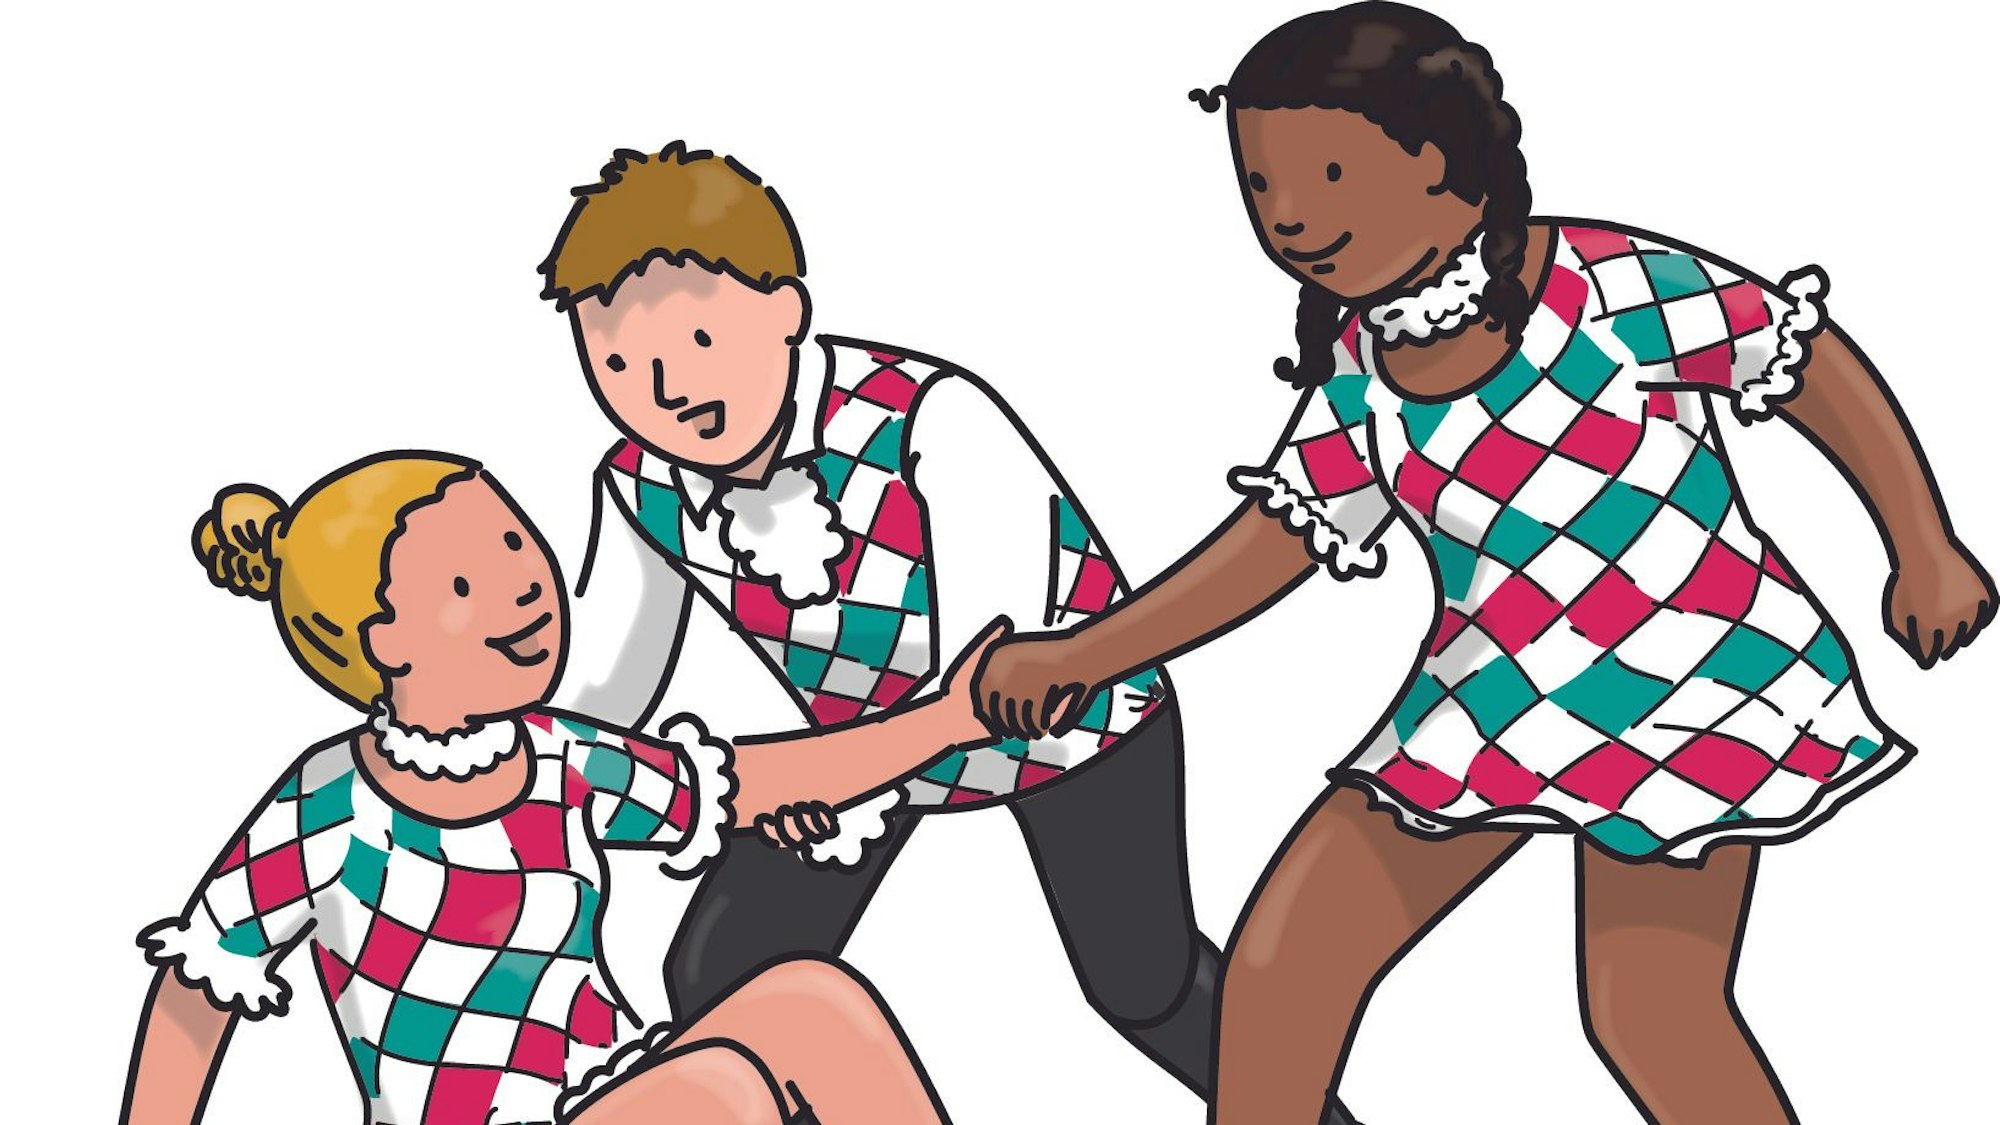 Die Illustration zeigt drei Mitglieder der Kinder- und Jugendtanzgruppe Kölsche Harlequins, ein Mädchen mit blondem Pferdeschwanz ist hingefallen, ein Junge und ein schwarzes Mädchen helfen ihr wieder auf.